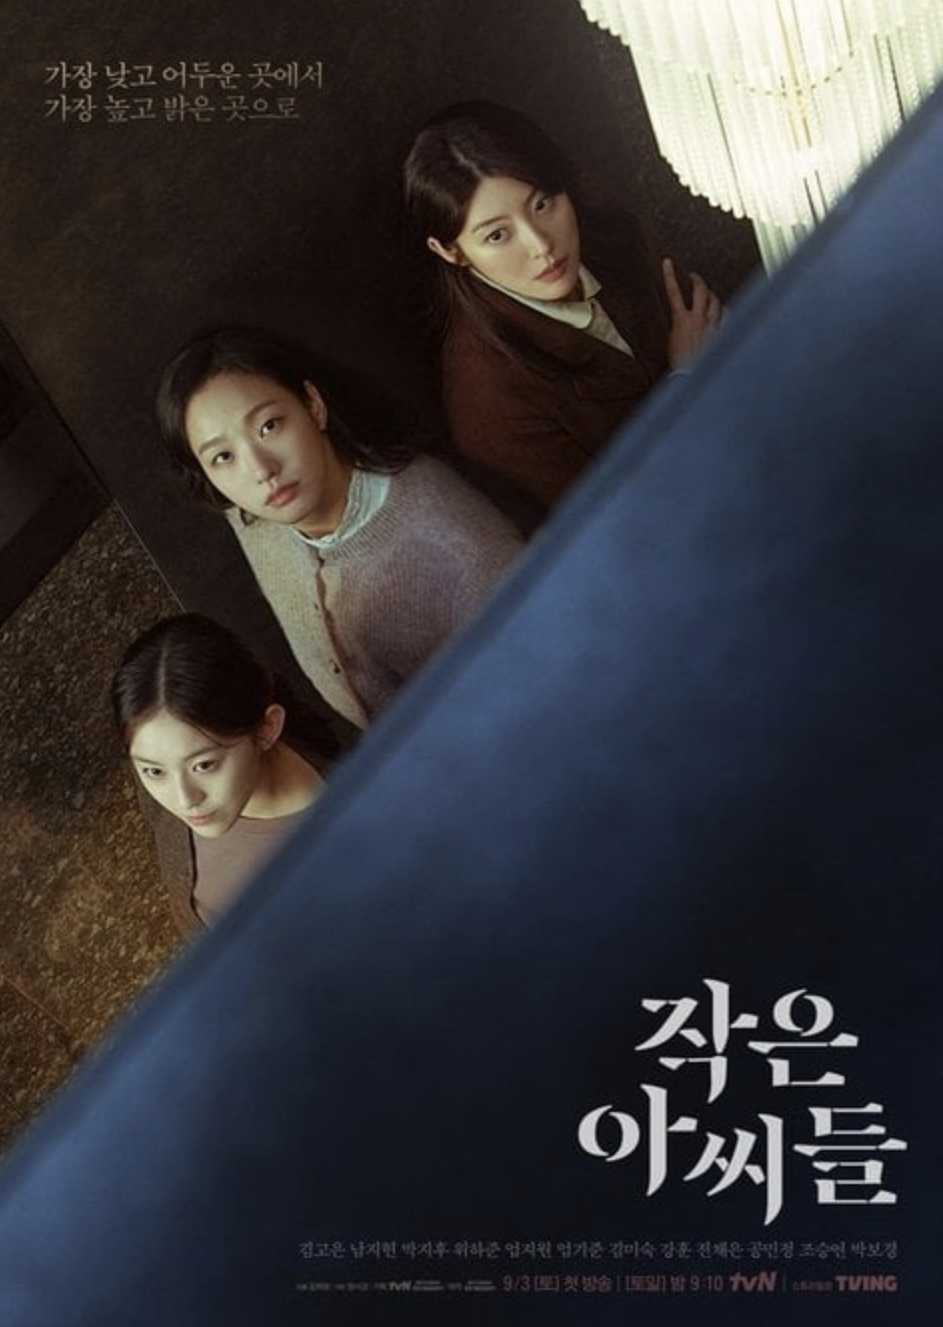 3 phim Hàn bị chỉ trích vì xúc phạm văn hóa, xuyên tạc lịch sử: 'King the Land' cũng góp mặt